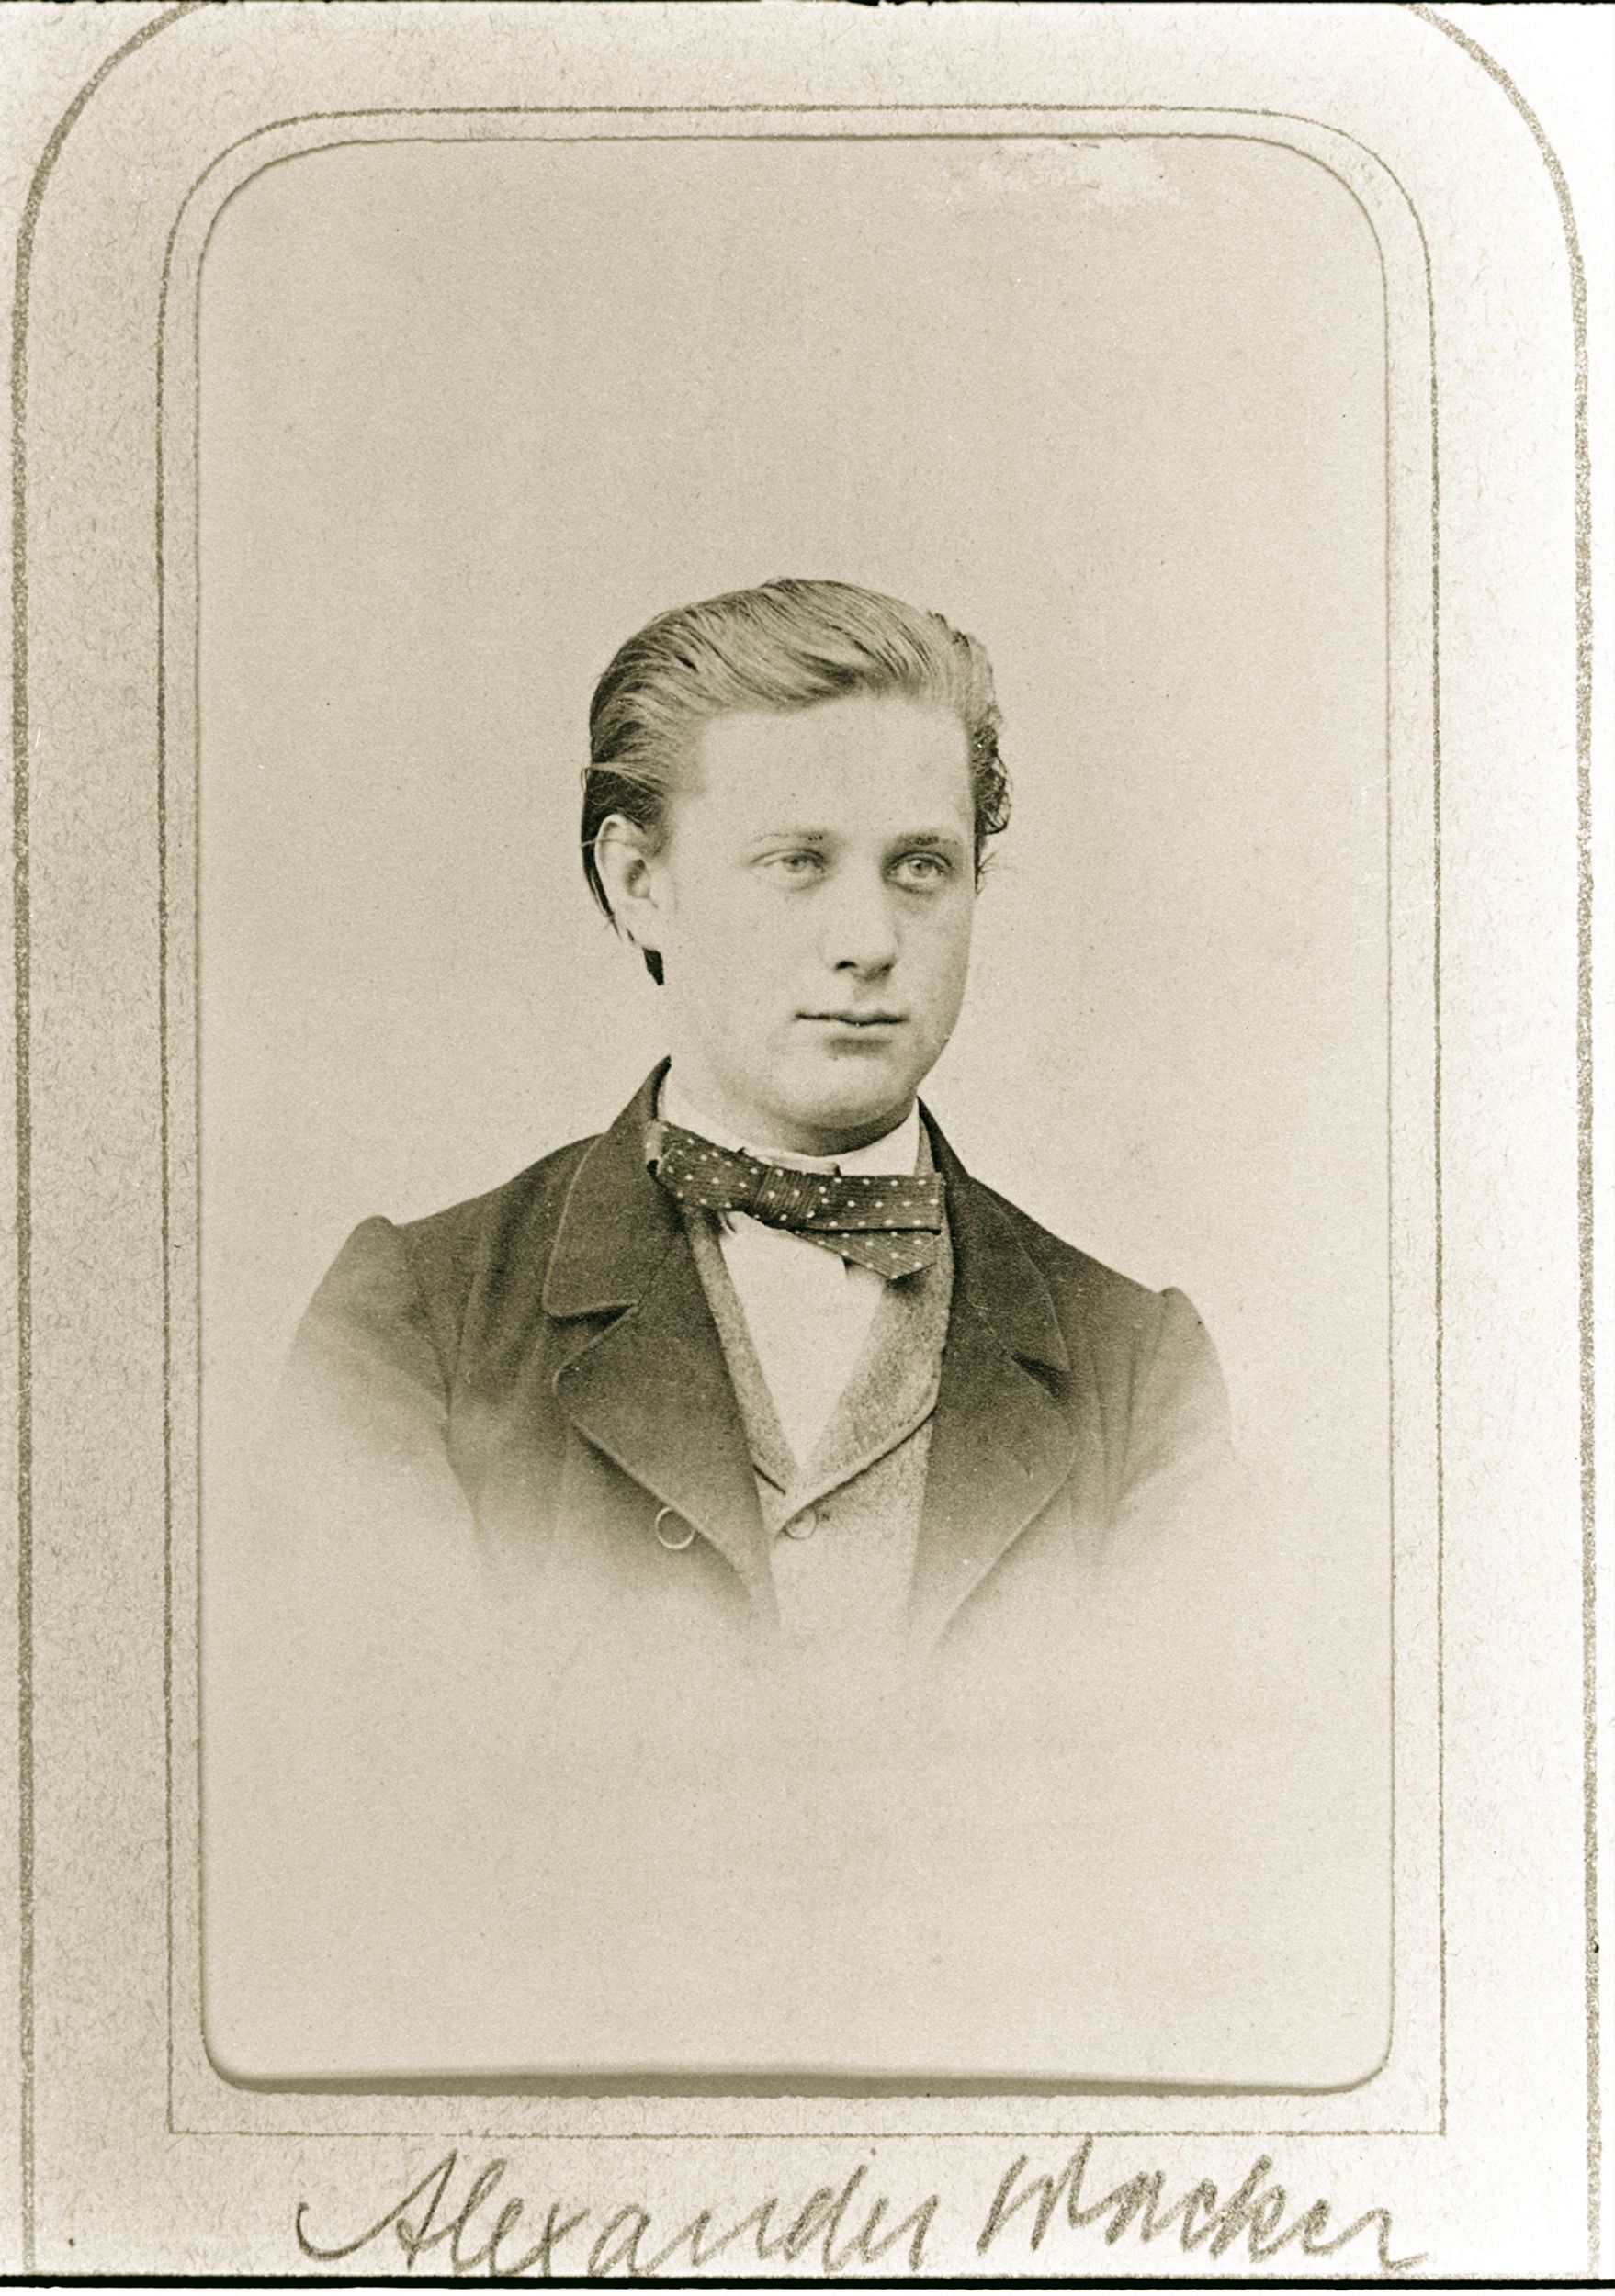 Alexander Wacker as a commercial apprentice in Schwerin in 1863